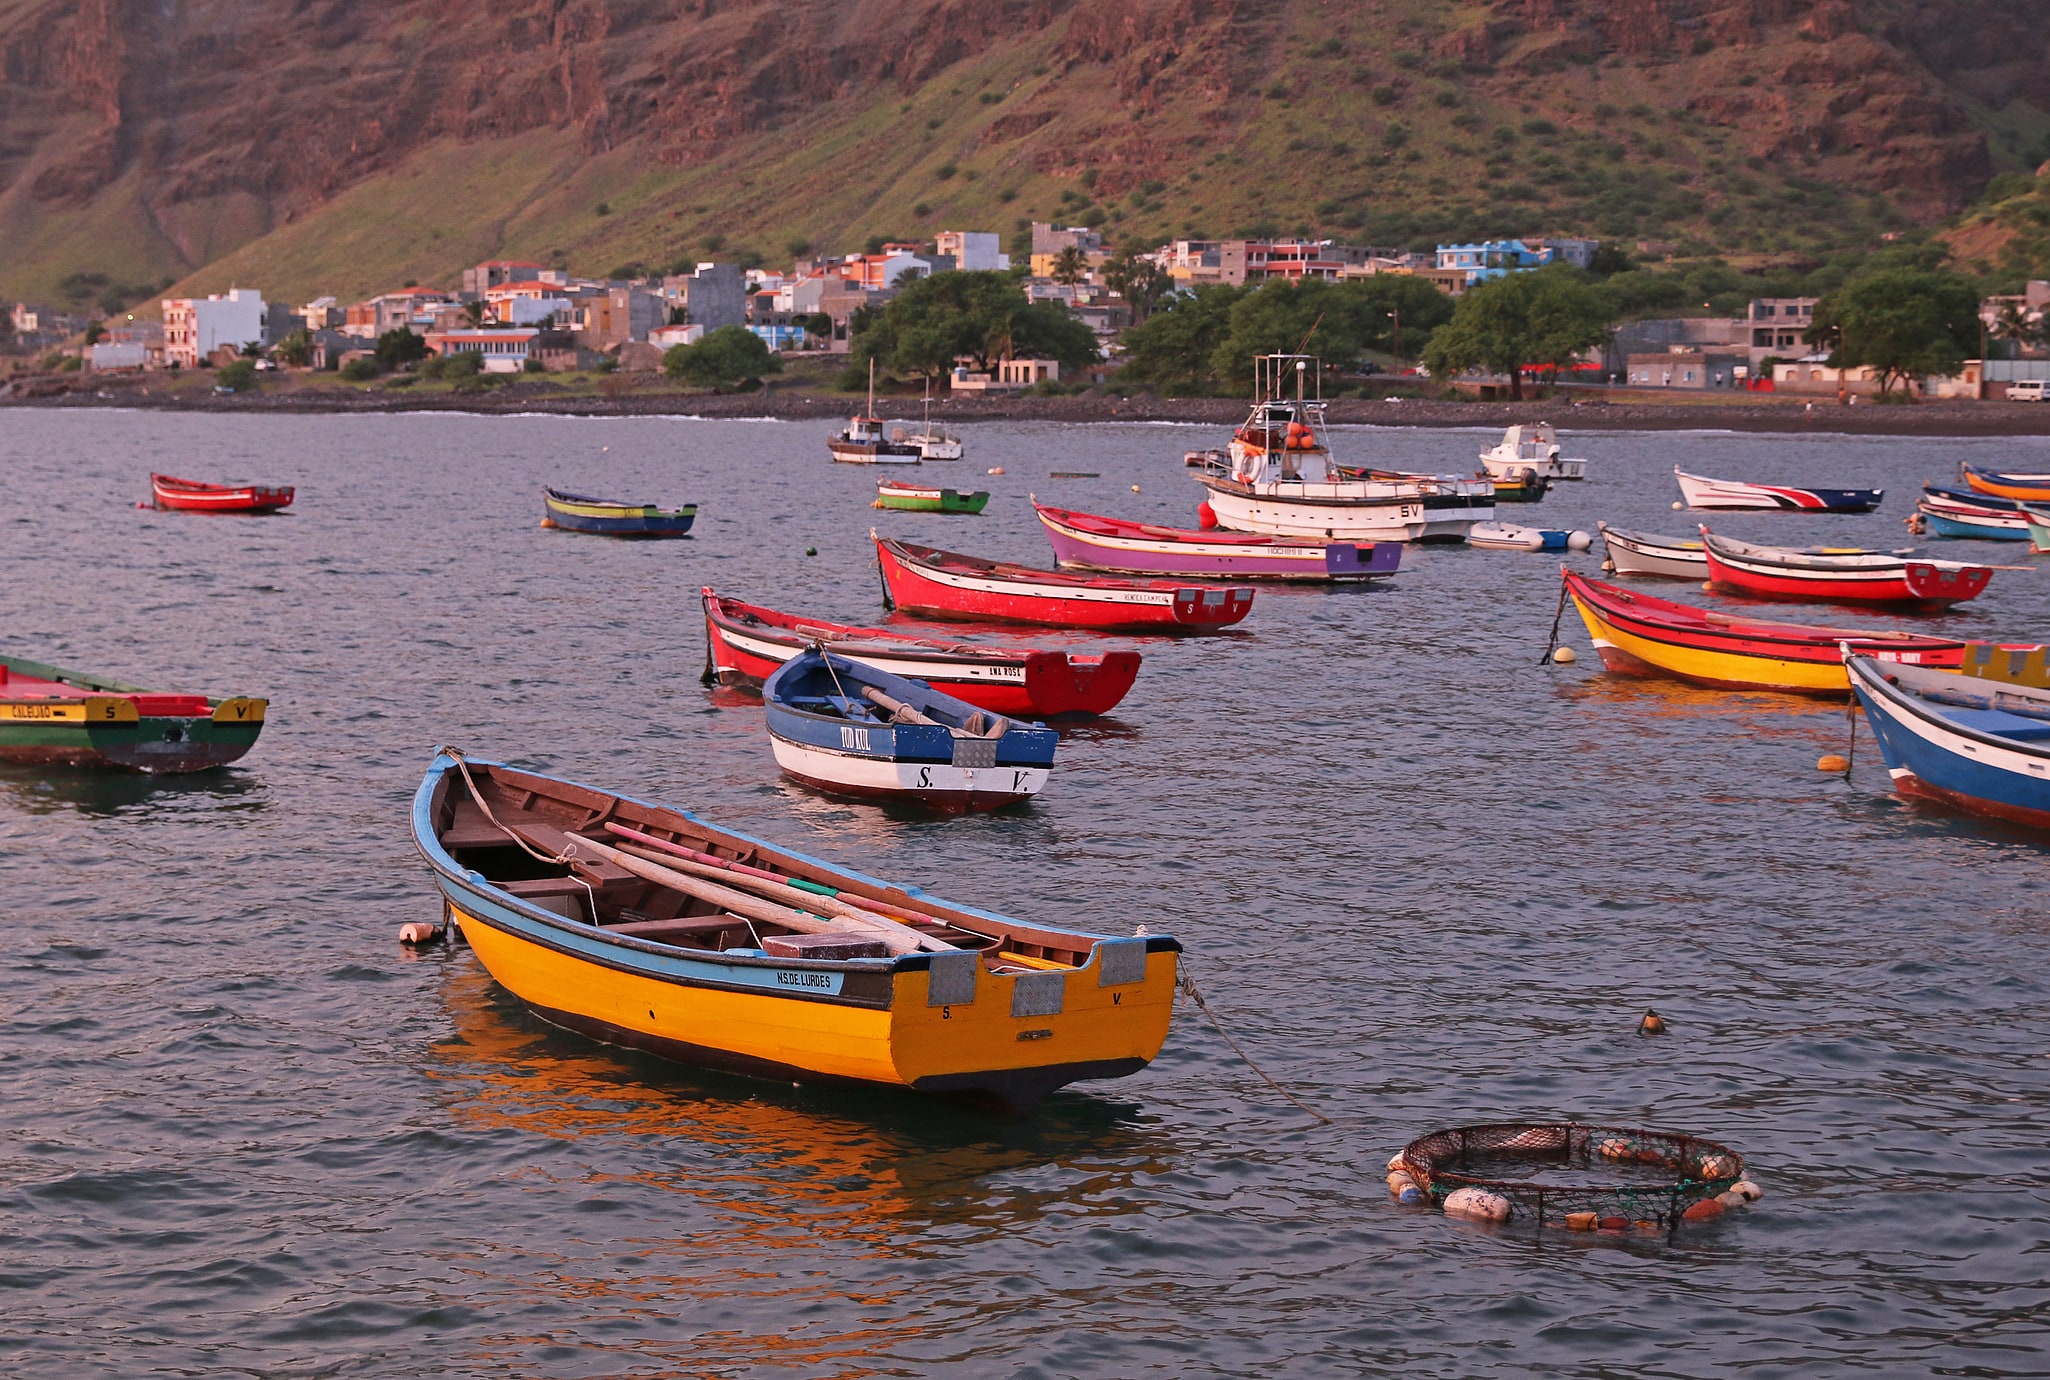 São Nicolau, Cabo Verde